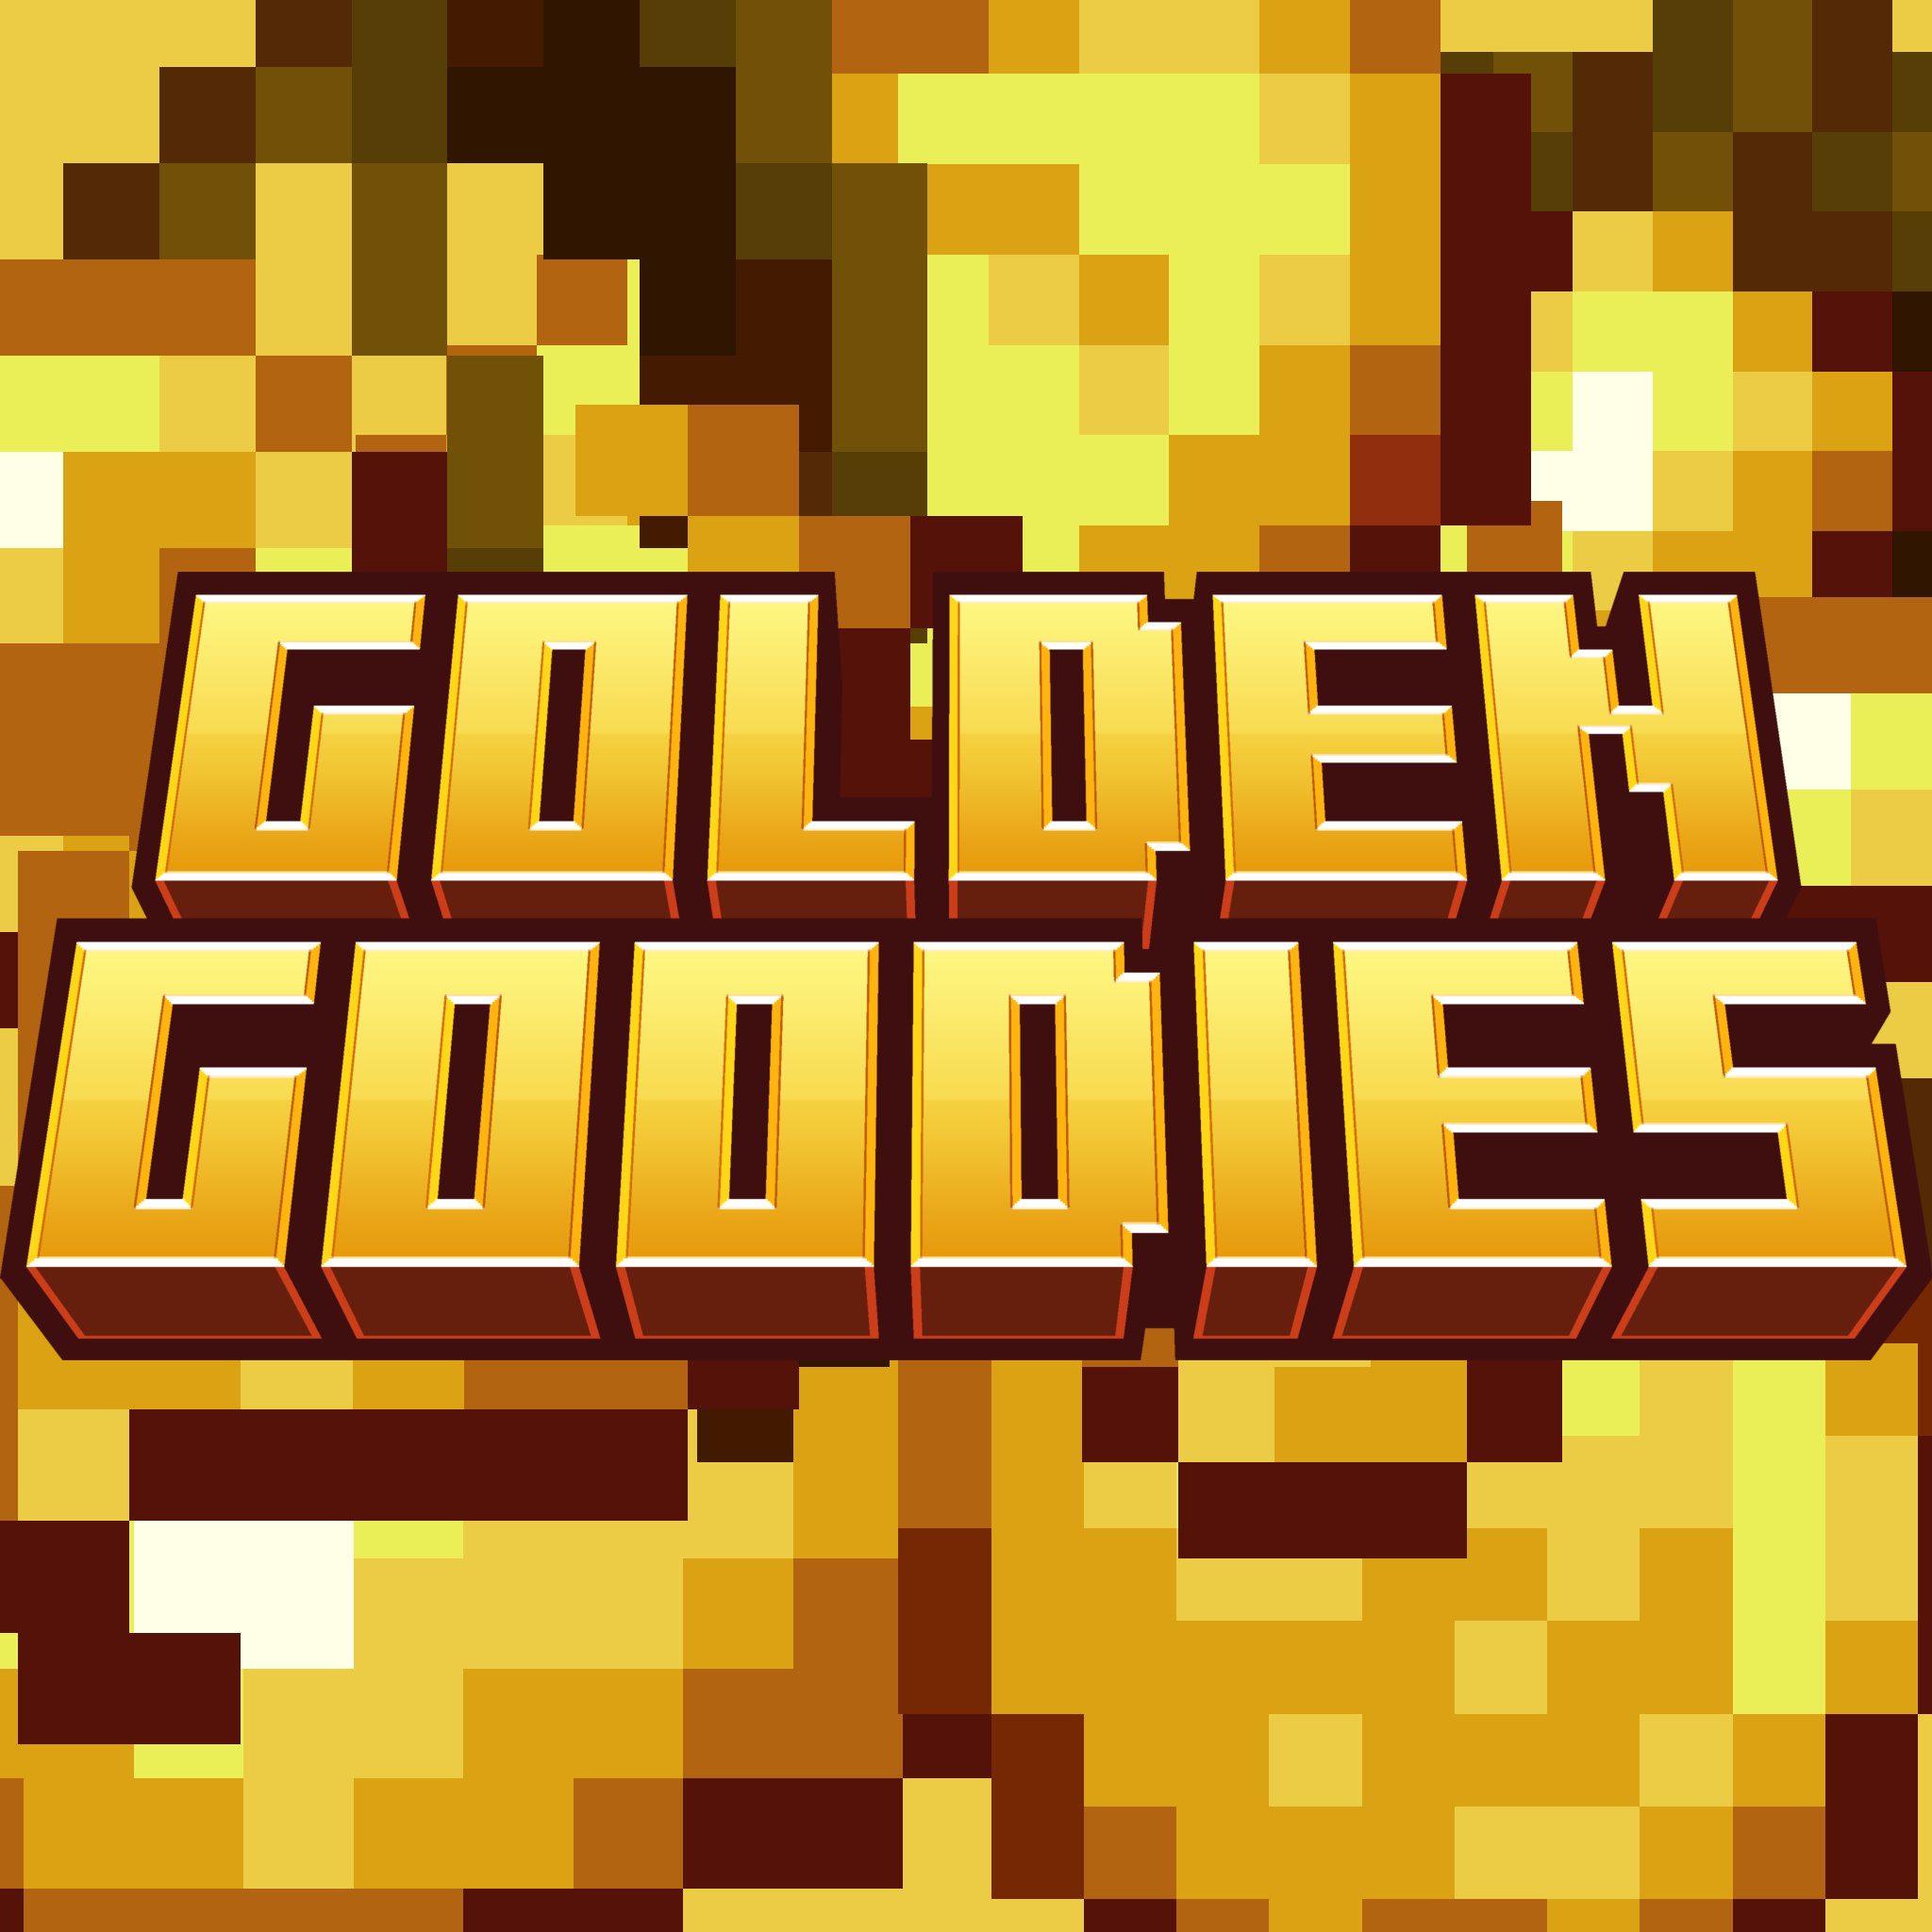 Golden Goodies